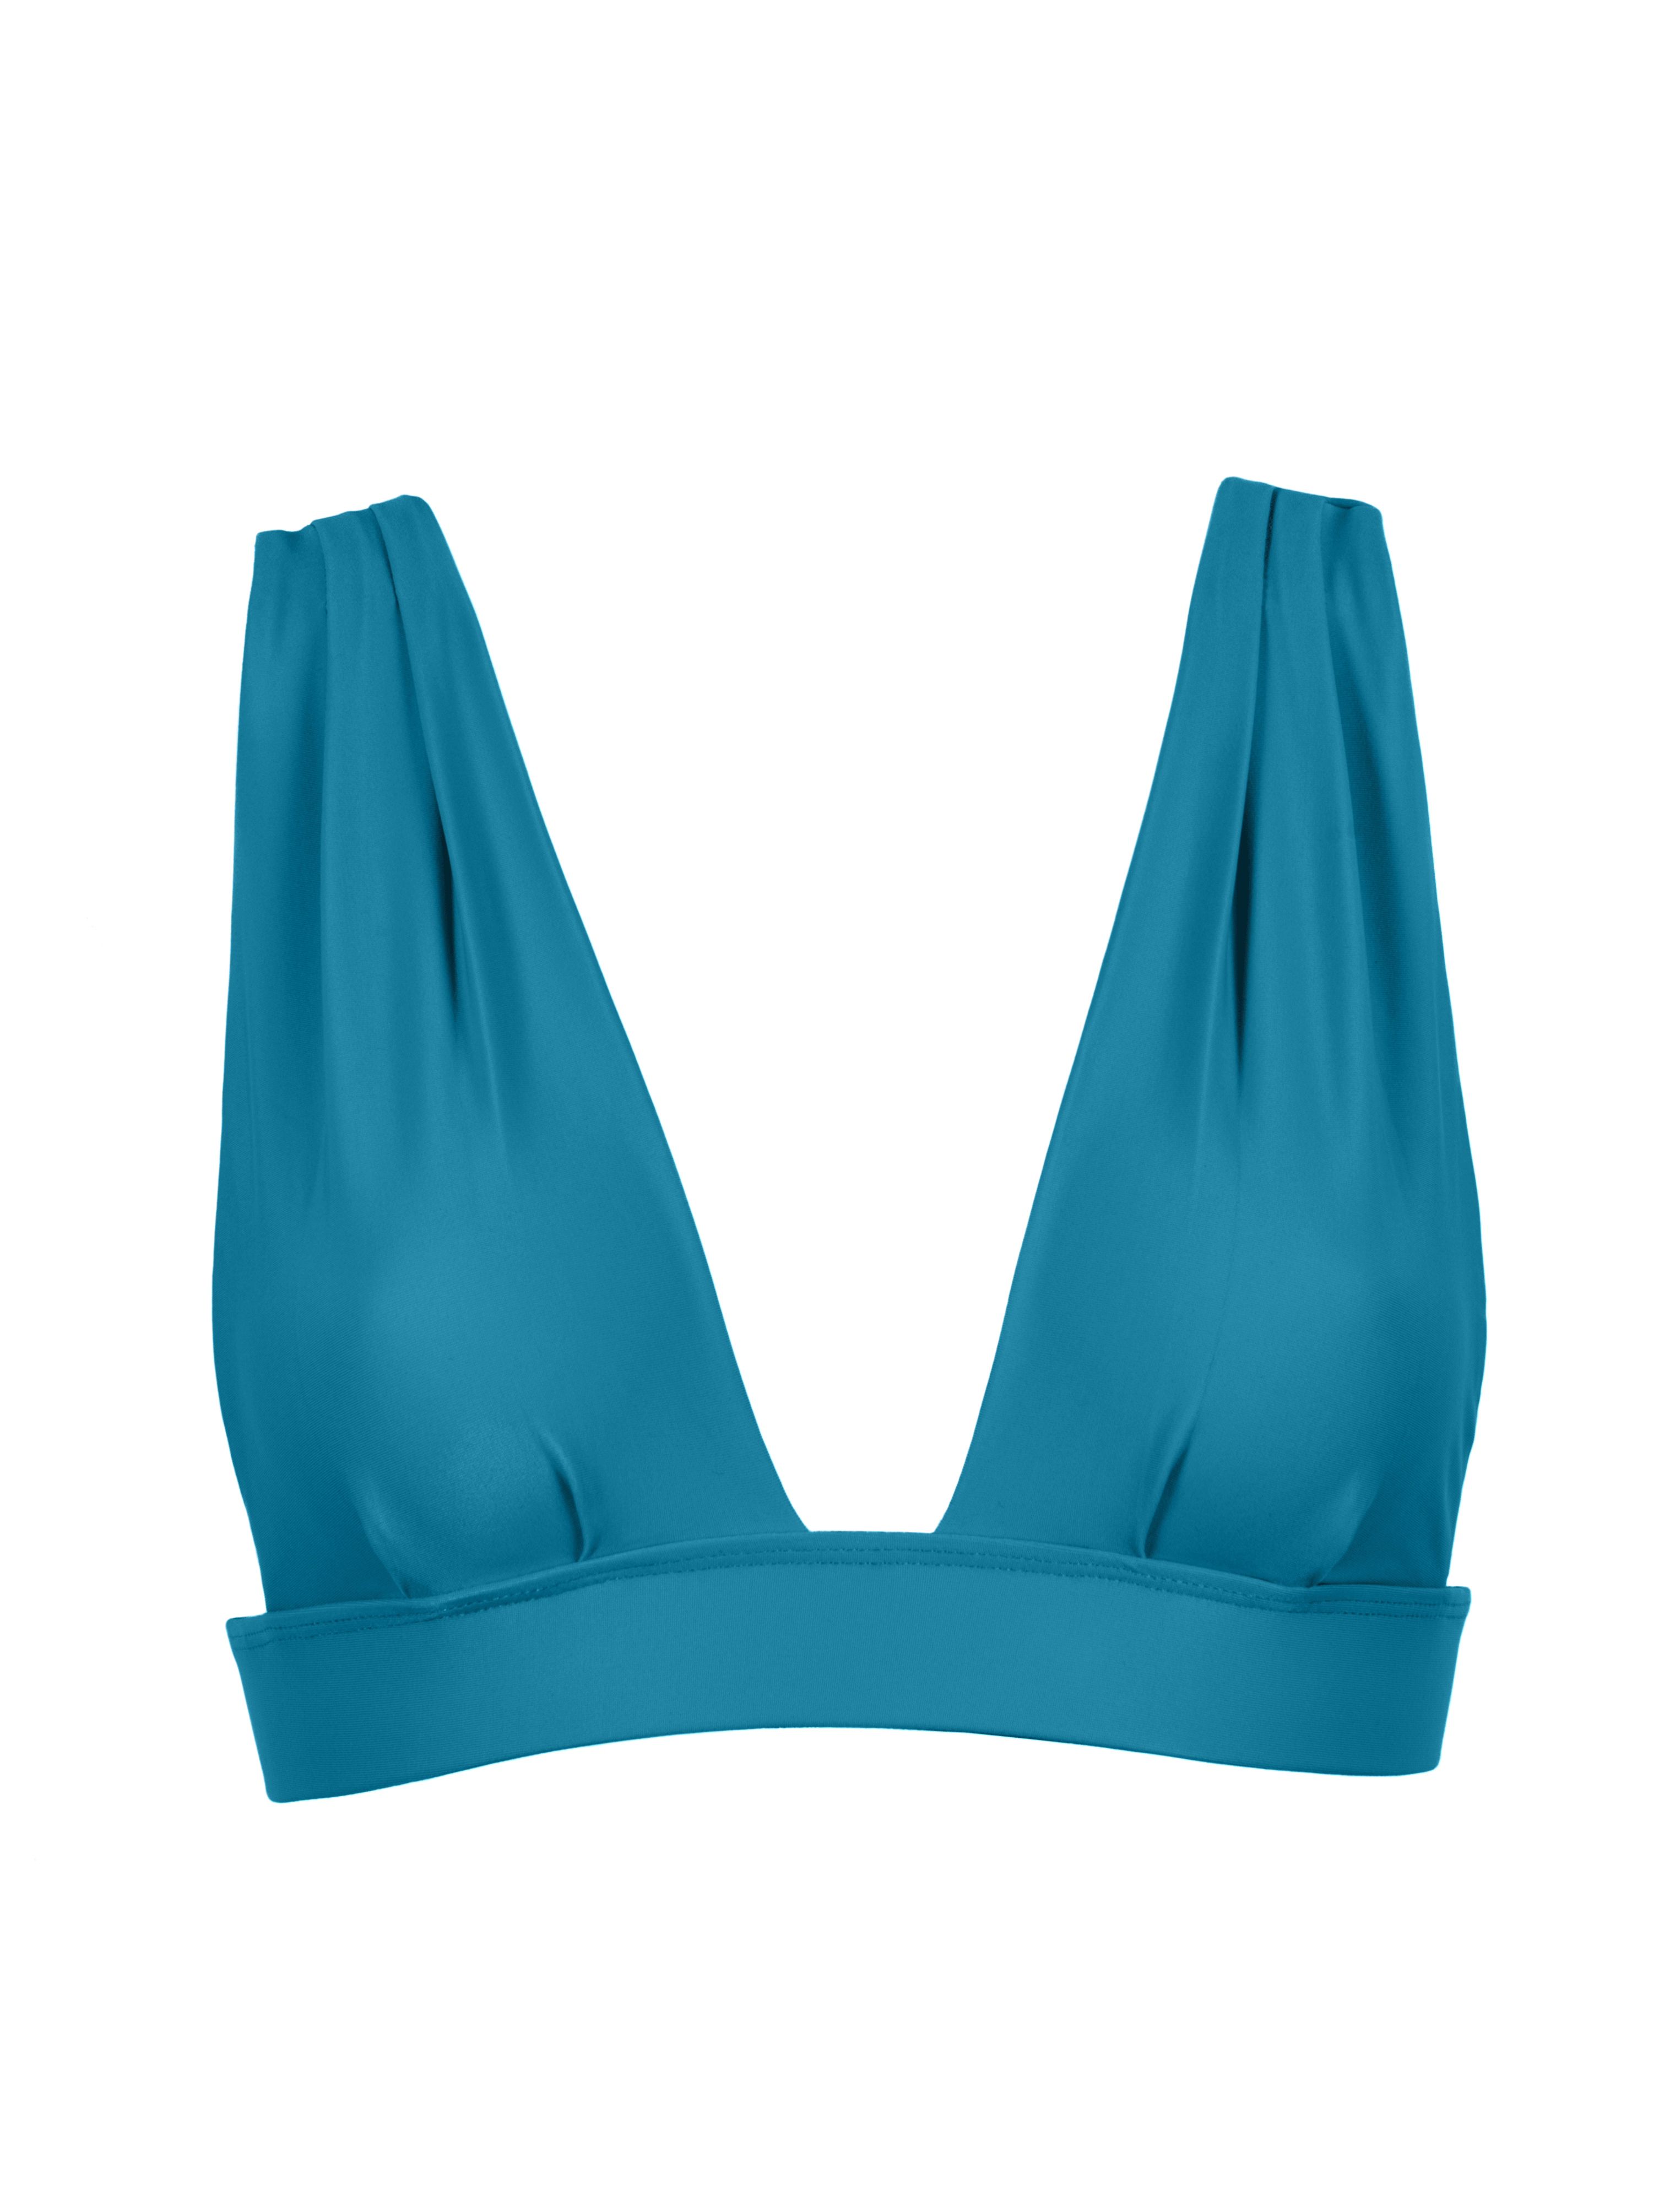 Produktbild Bikini Oberteil feminin blau recyceltem Stoff